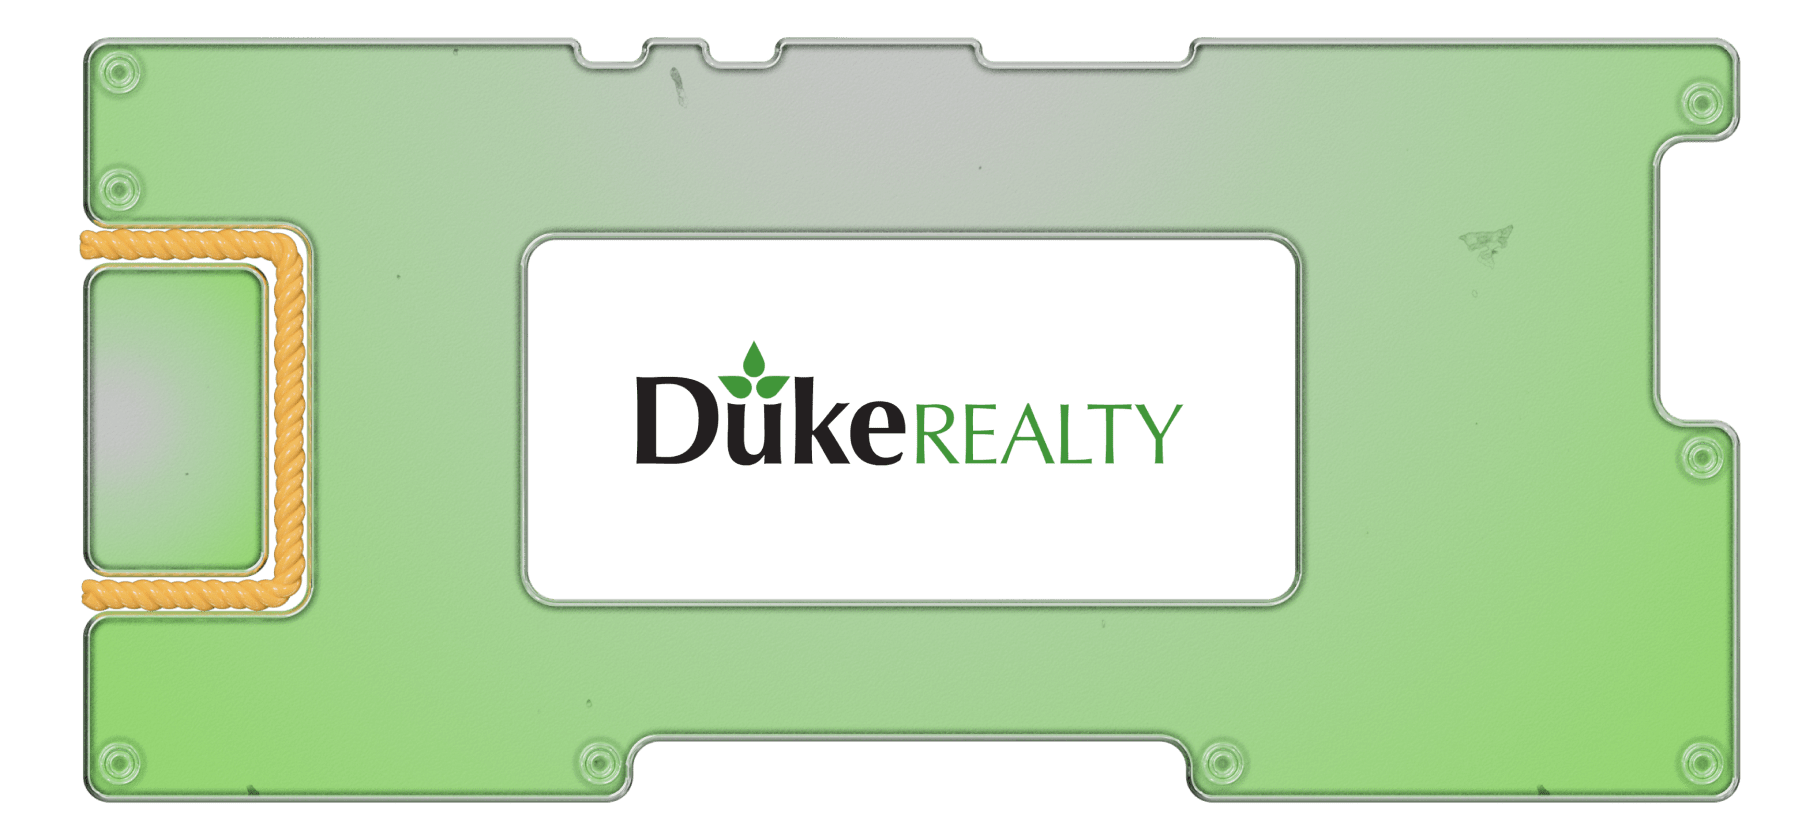 Герцоги недвижимости: инвестируем в складской REIT Duke Realty